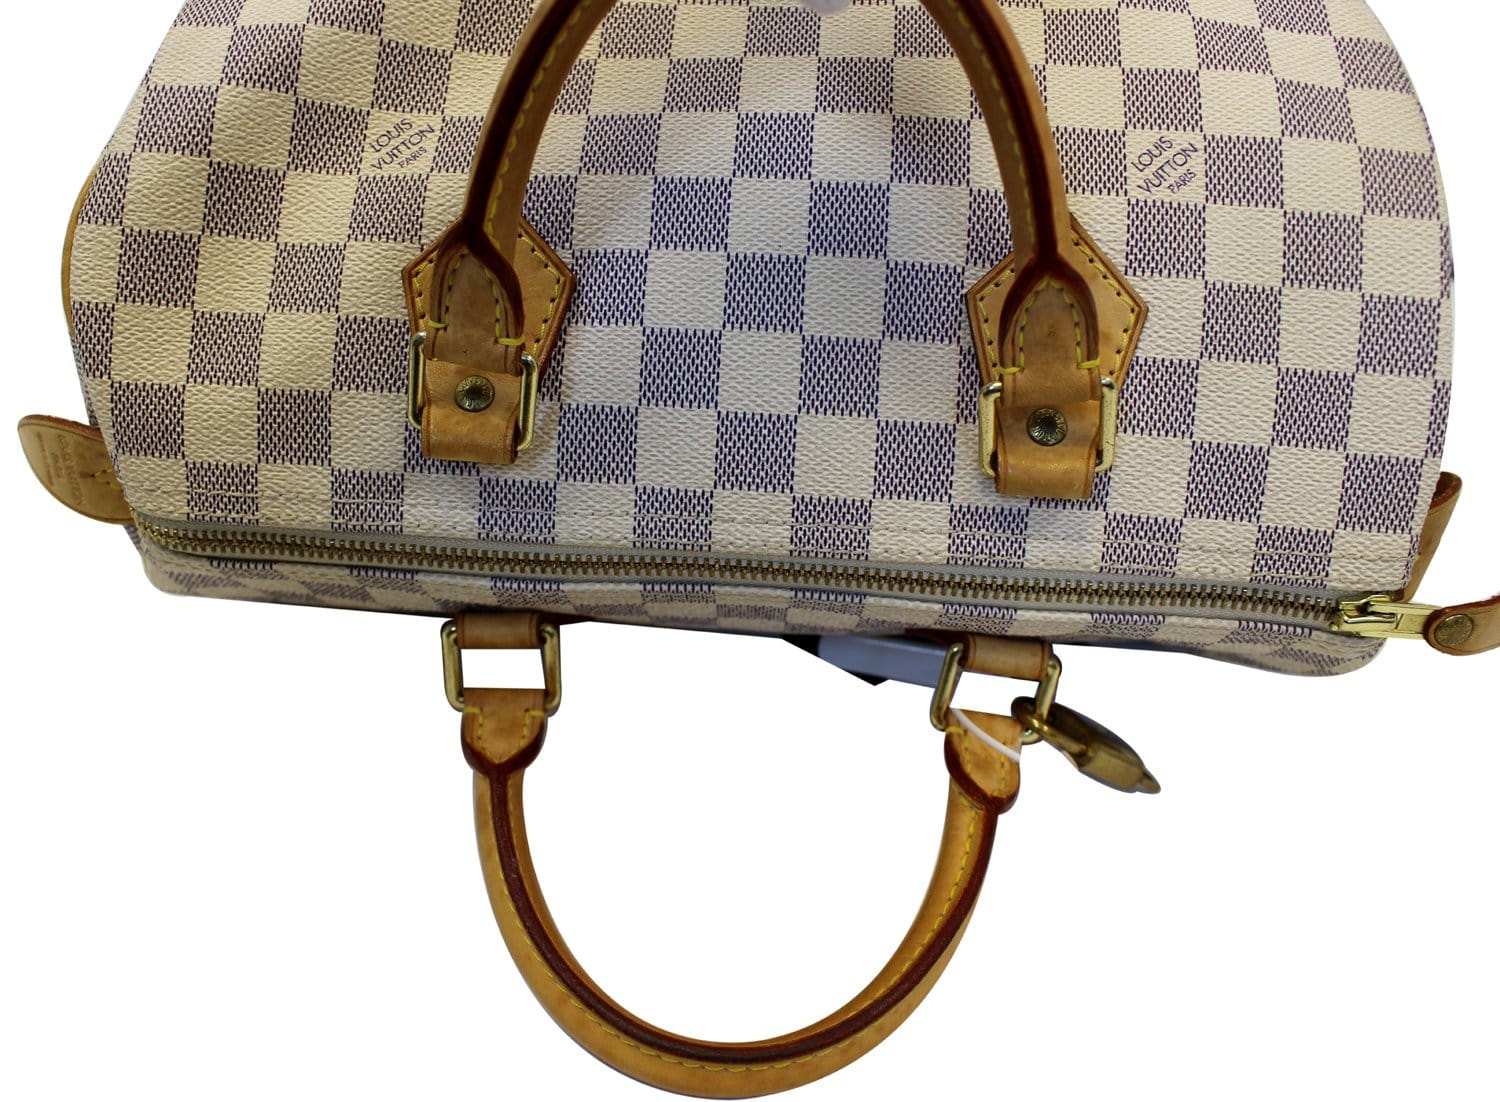 Speedy 30 Bandouliere Damier Azur – Keeks Designer Handbags